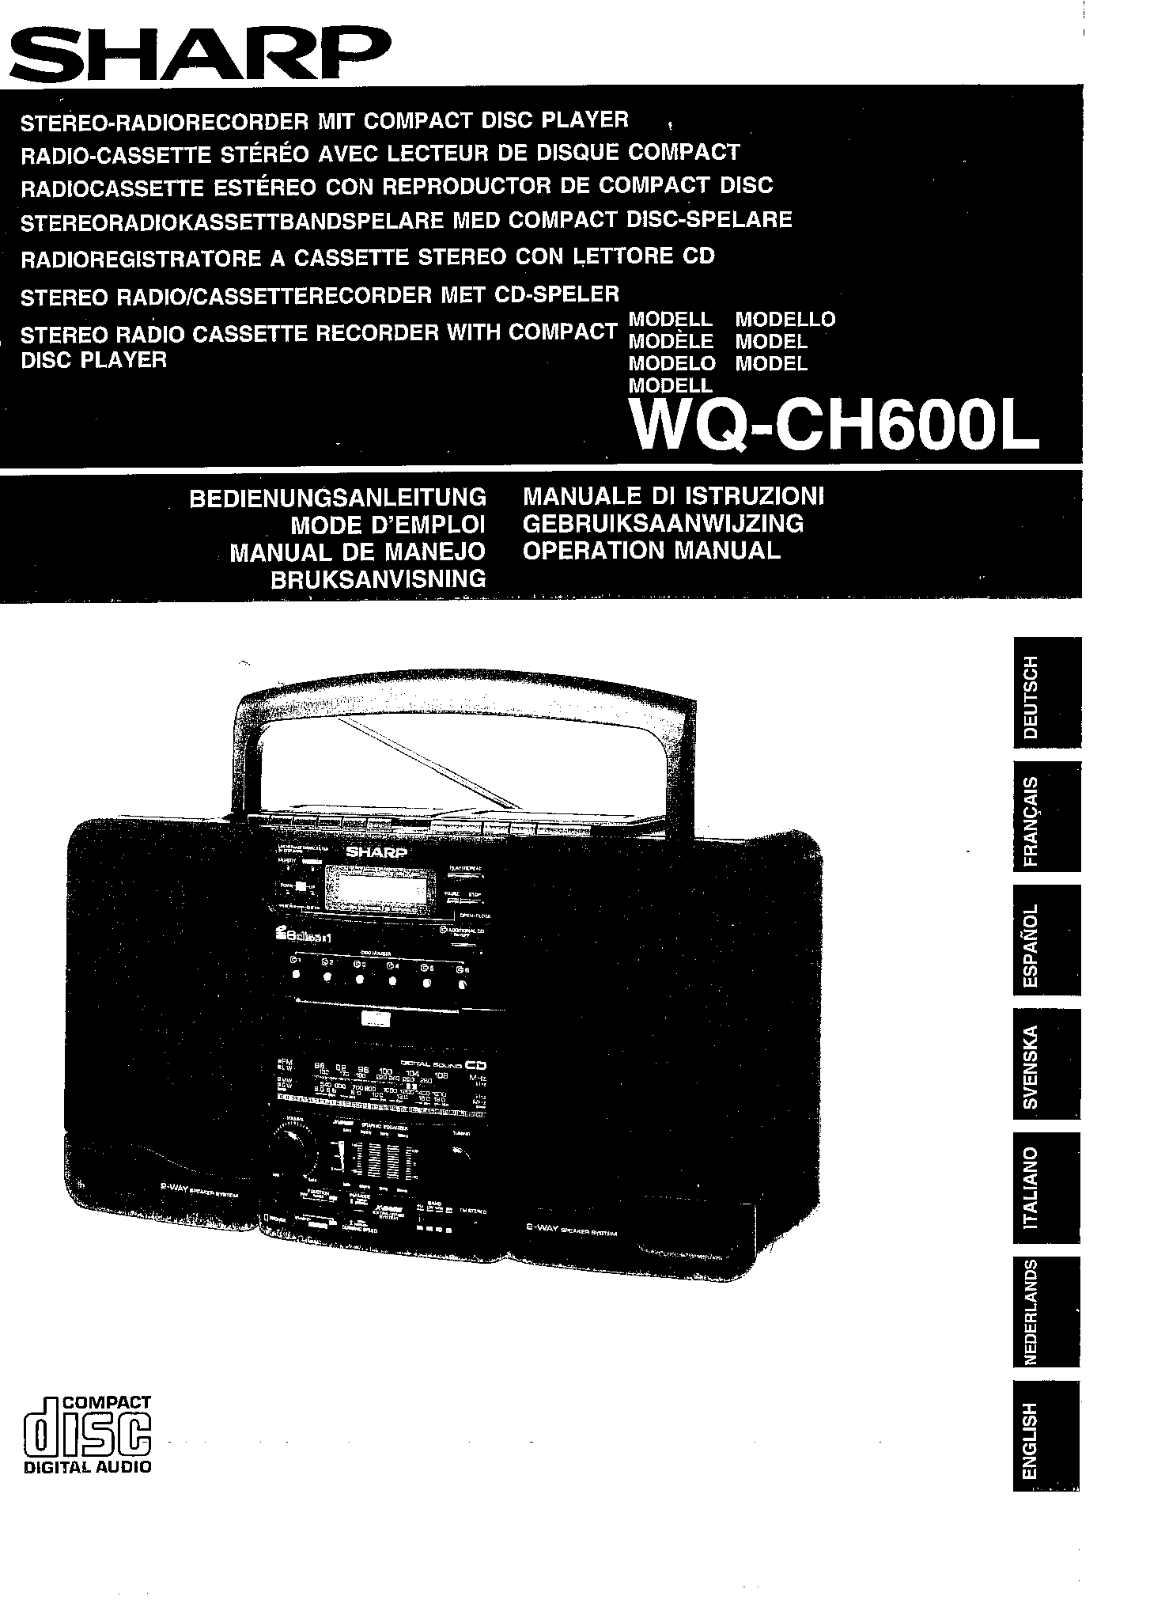 Sharp WQ-CH600L Manual